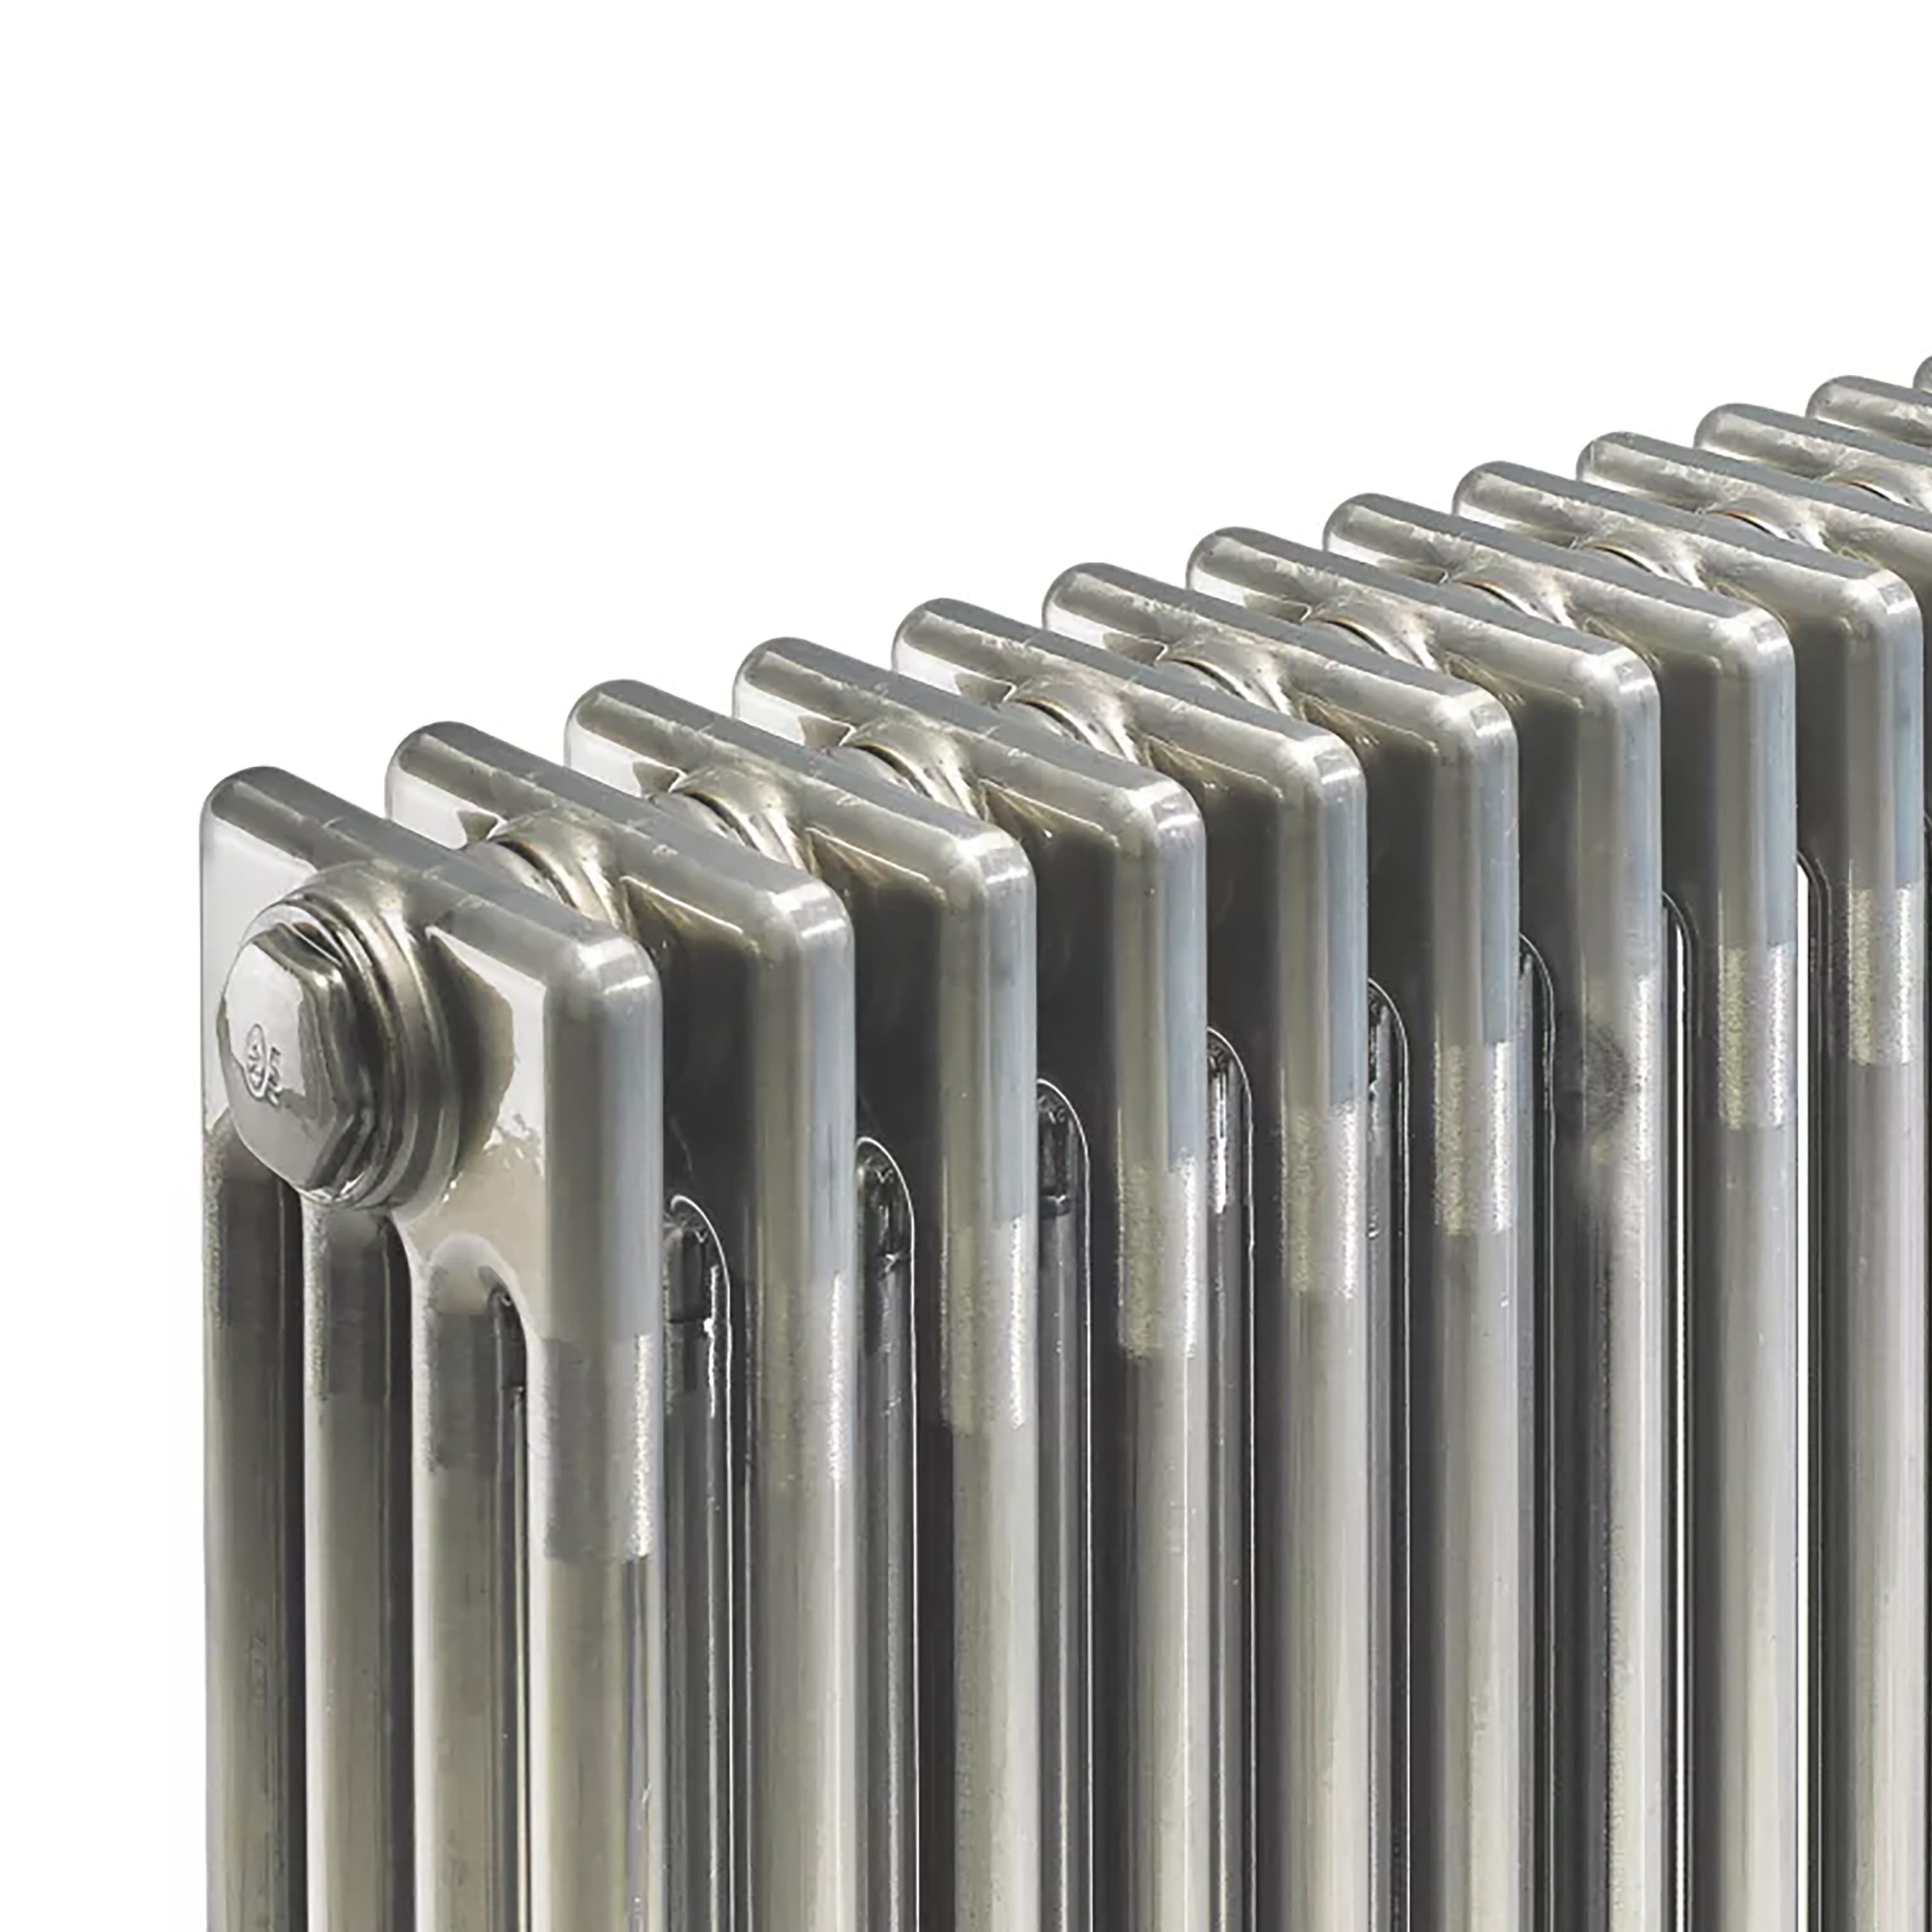 Acova Raw metal 4 Column Radiator, (W)812mm x (H)600mm